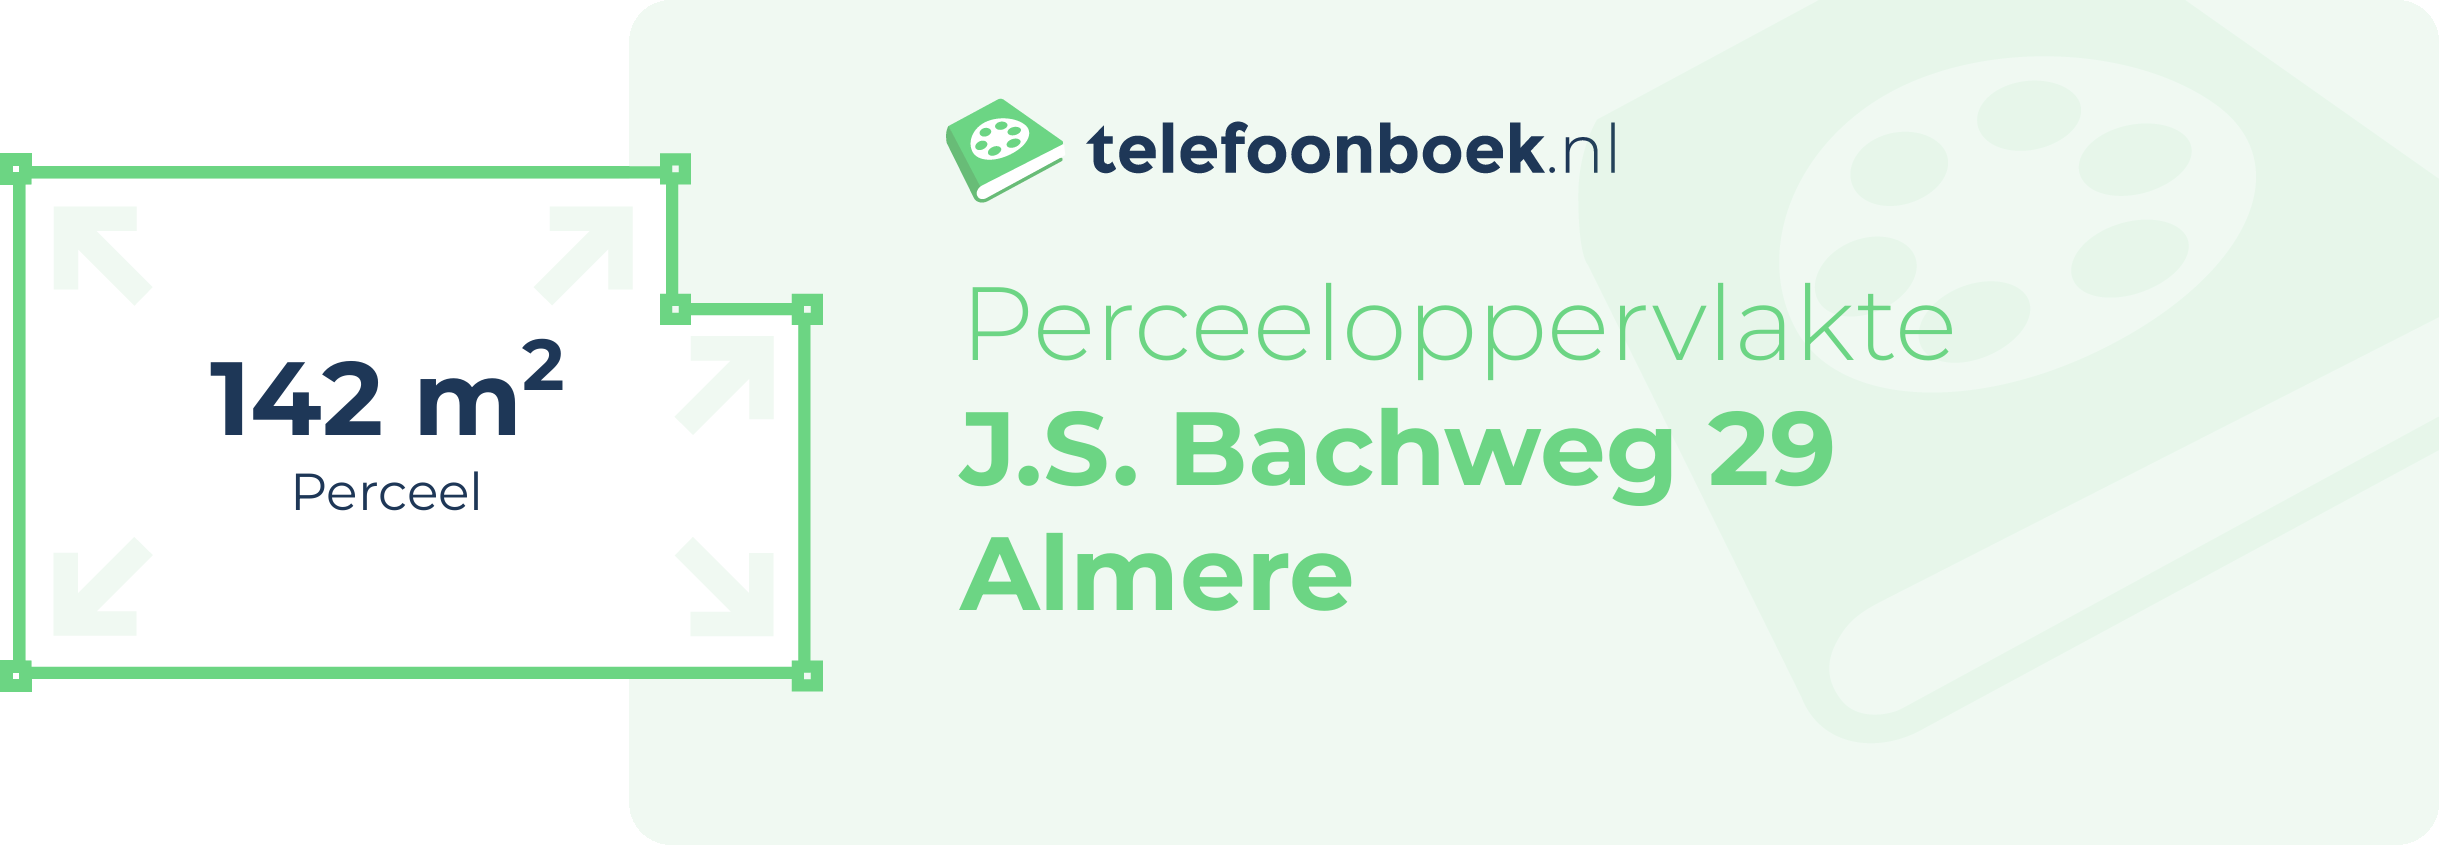 Perceeloppervlakte J.S. Bachweg 29 Almere